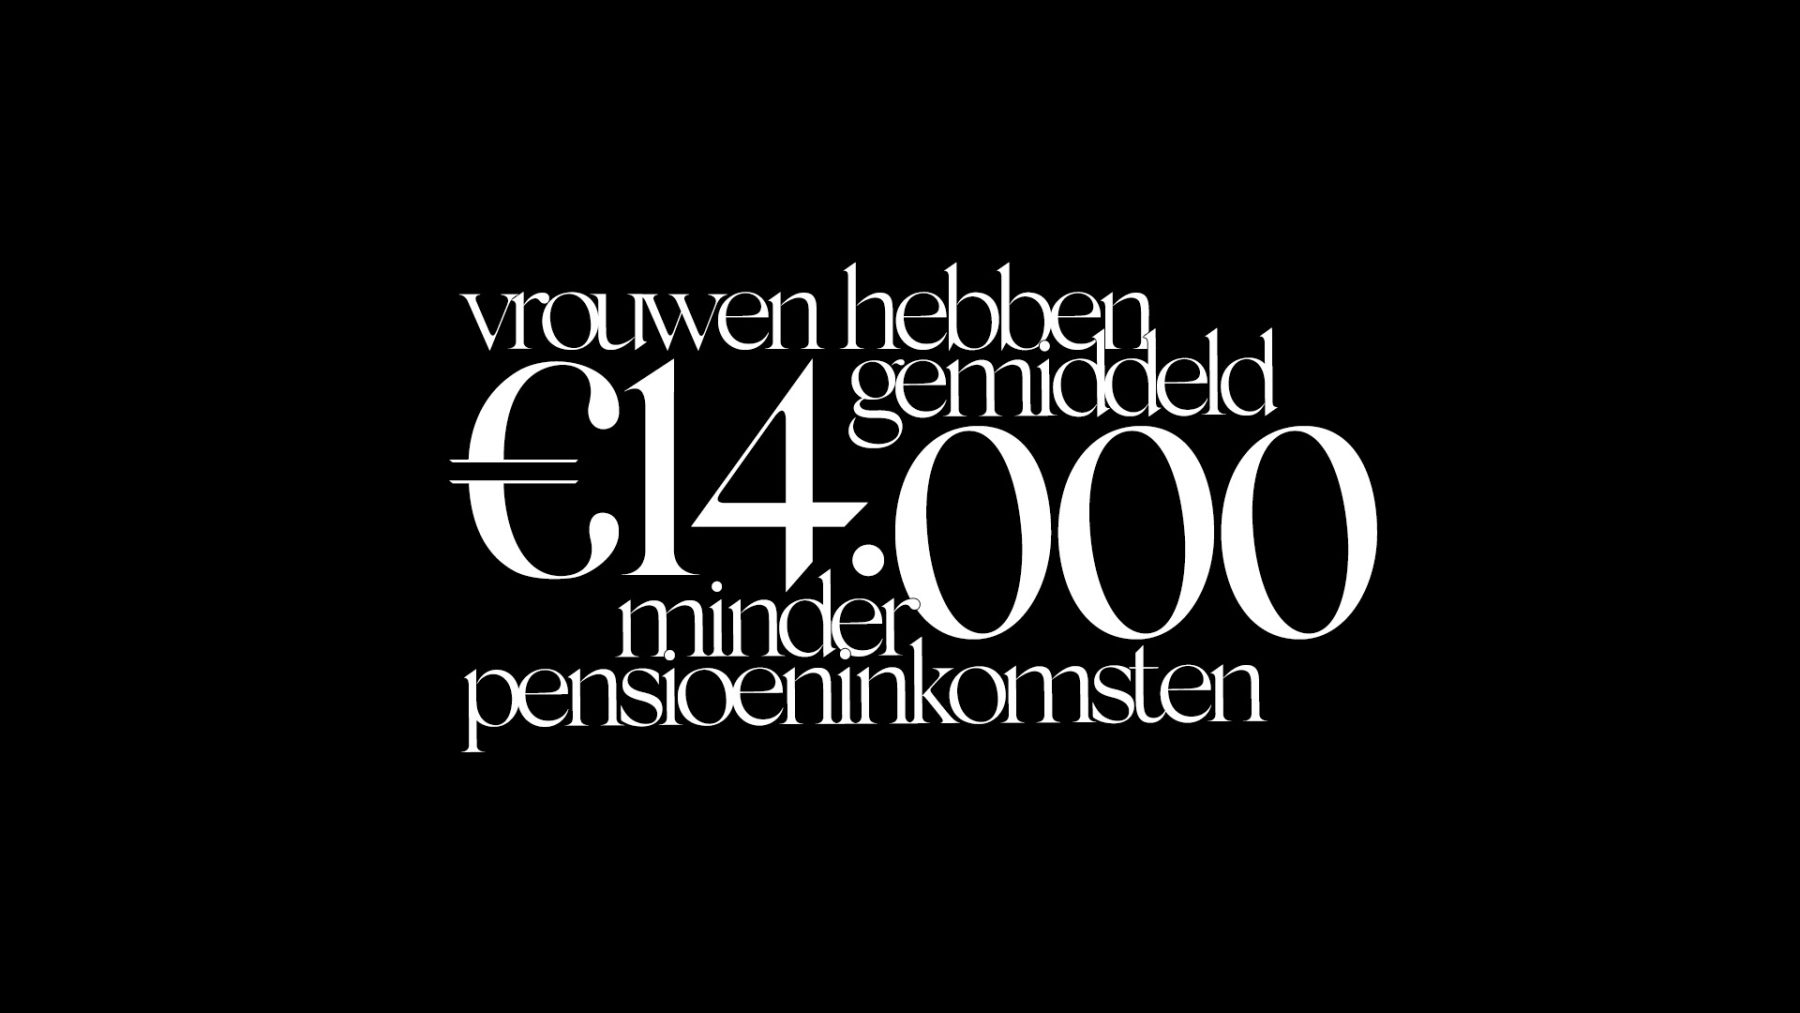 Zwarte achtergrond met in het wit de tekst: vrouwen hebben gemiddeld 14.000 euro minder pensioeninkomsten